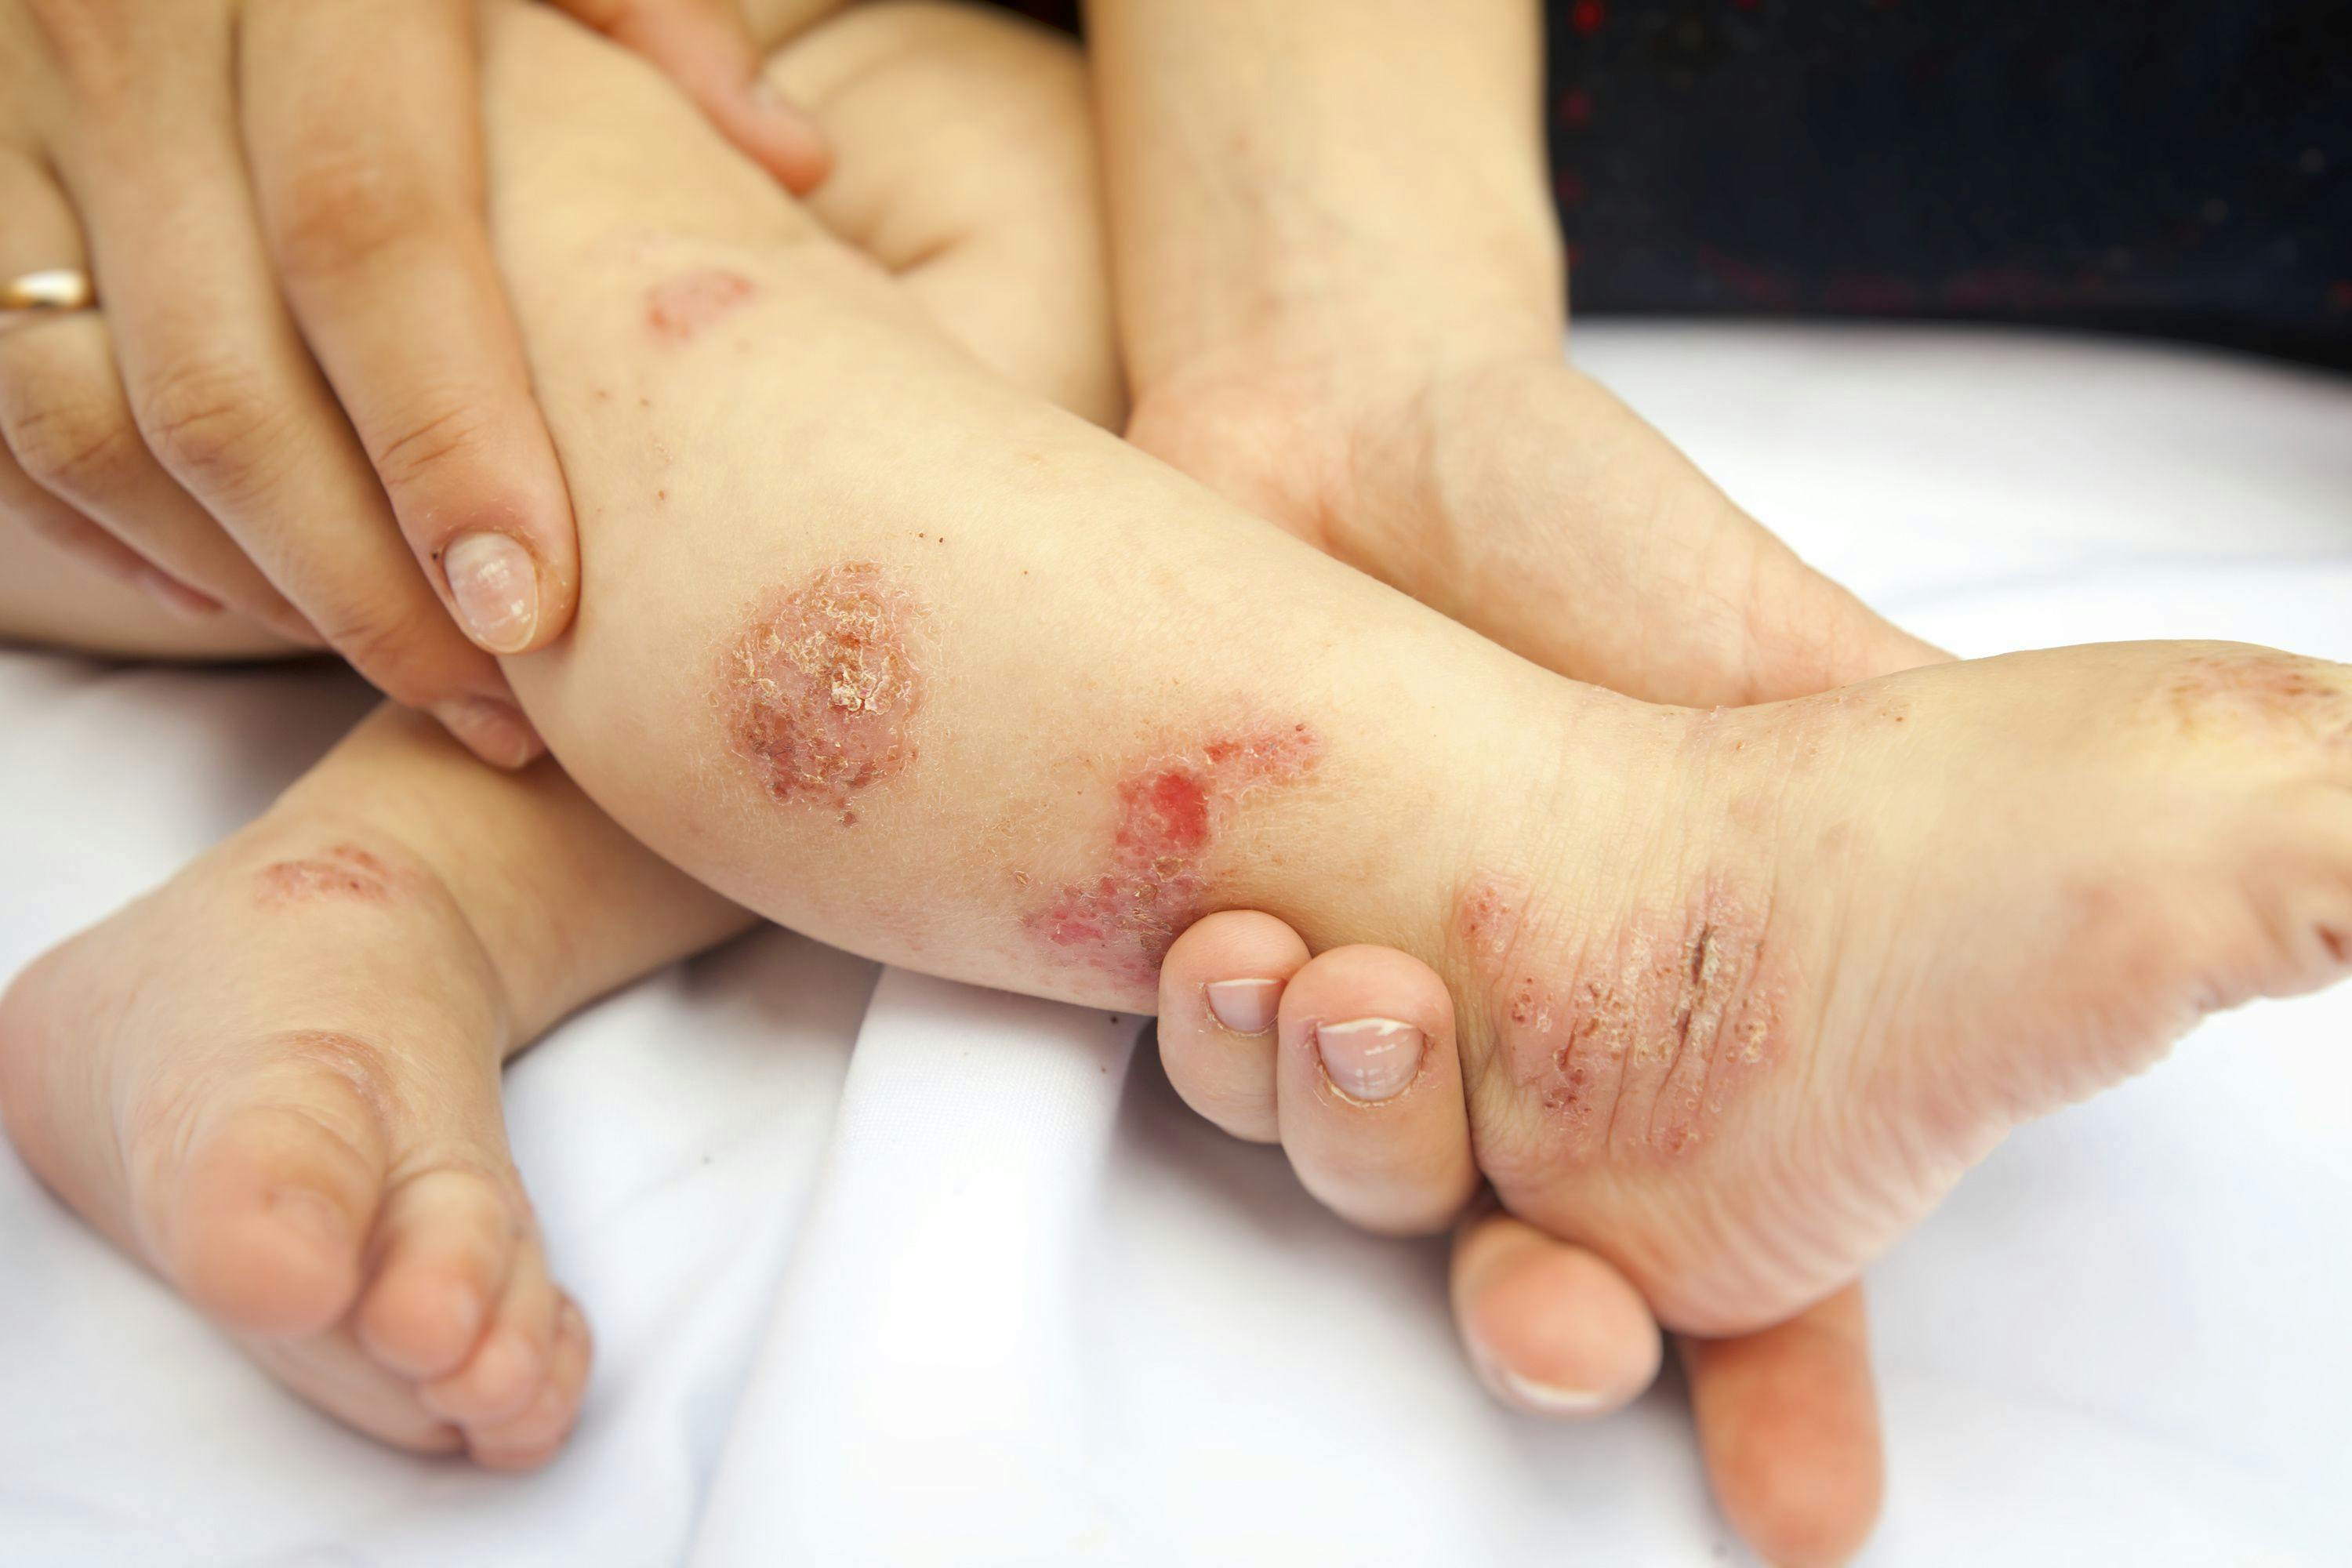 Child with dermatitis